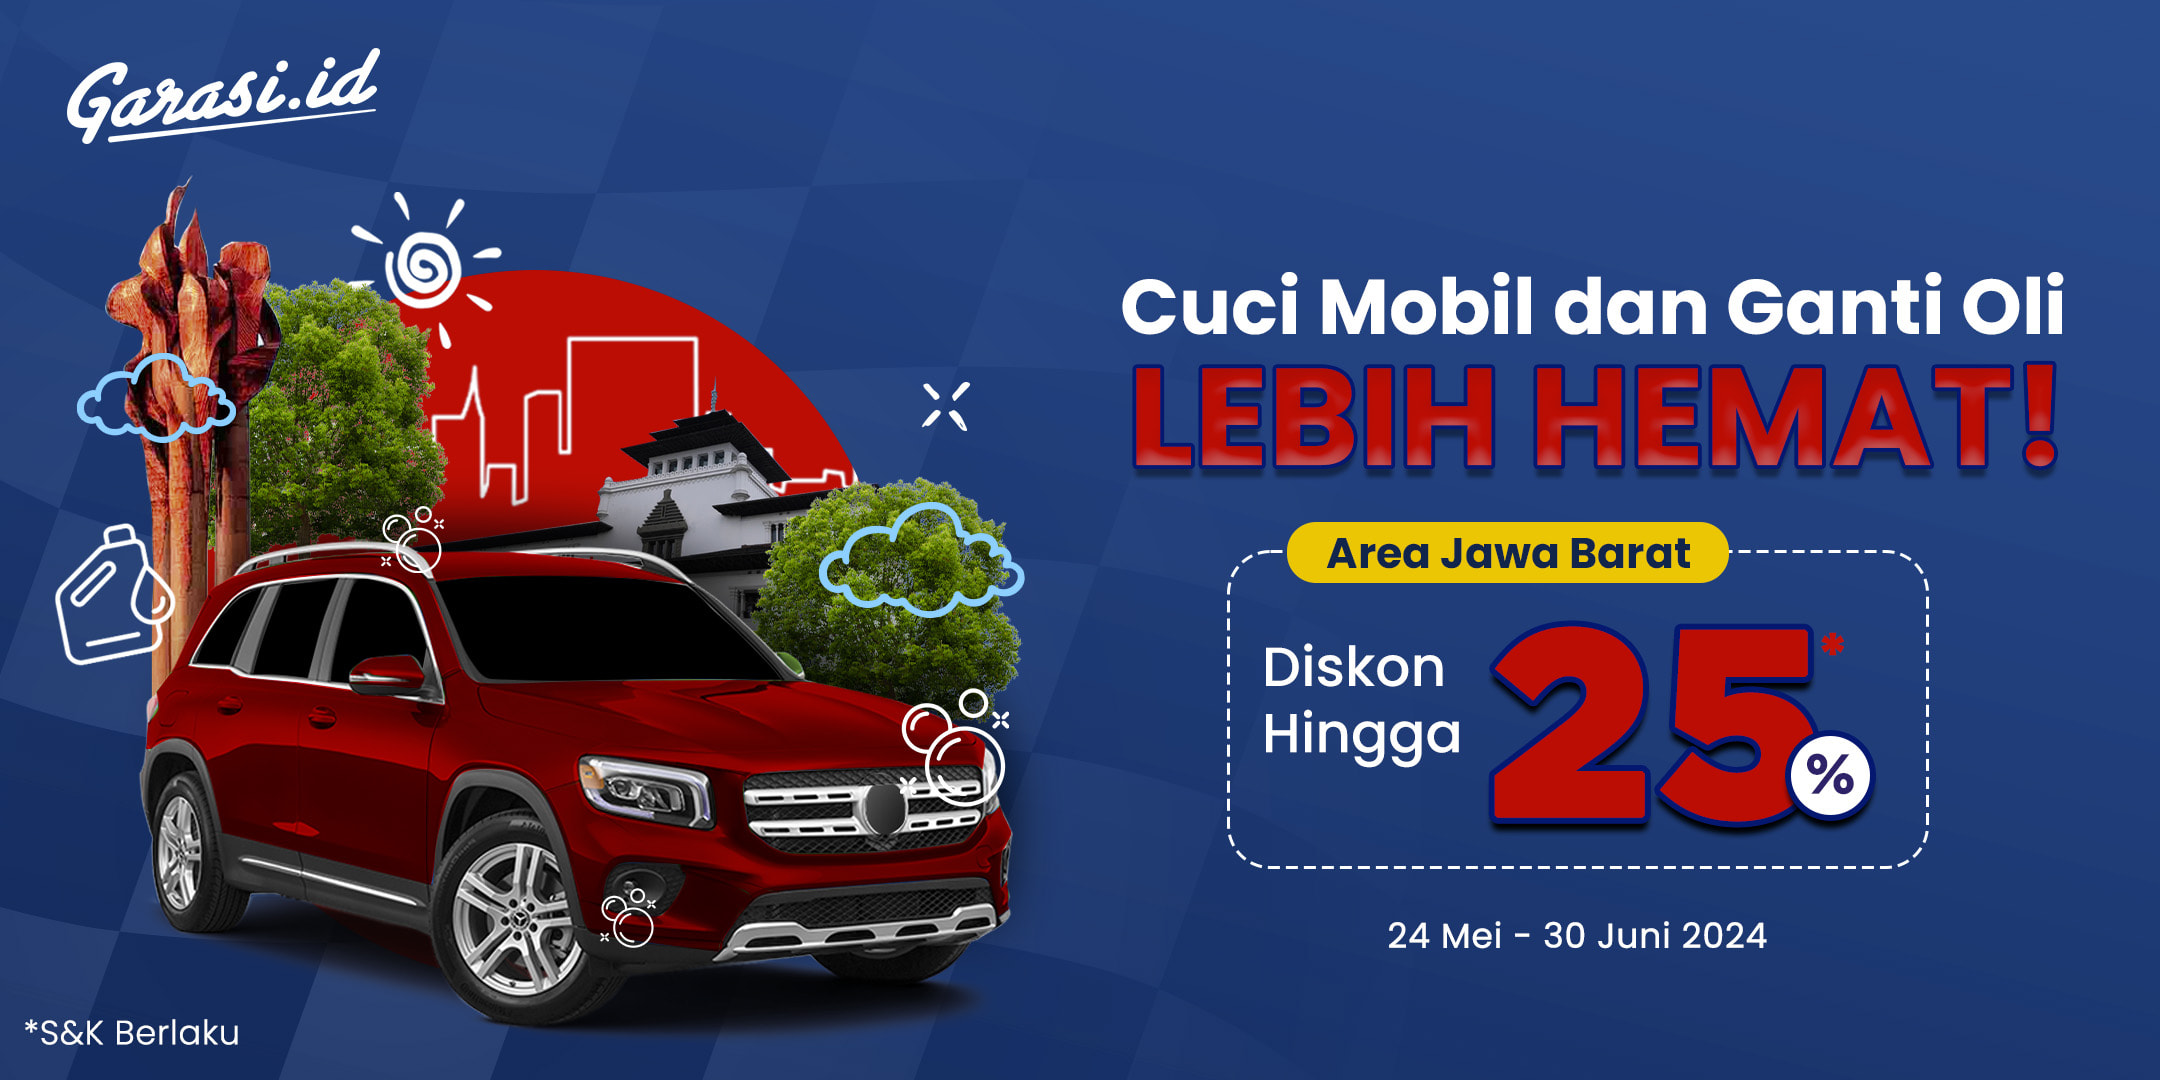 Nikmati harga khusus untuk “Ganti Oli & Cuci Mobil” khusus area Jawa Barat dengan membeli voucher servis di Garasi.id, kamu tidak perlu khawatir dengan kondisi mobil kamu apabila kamu berencana bepergian.